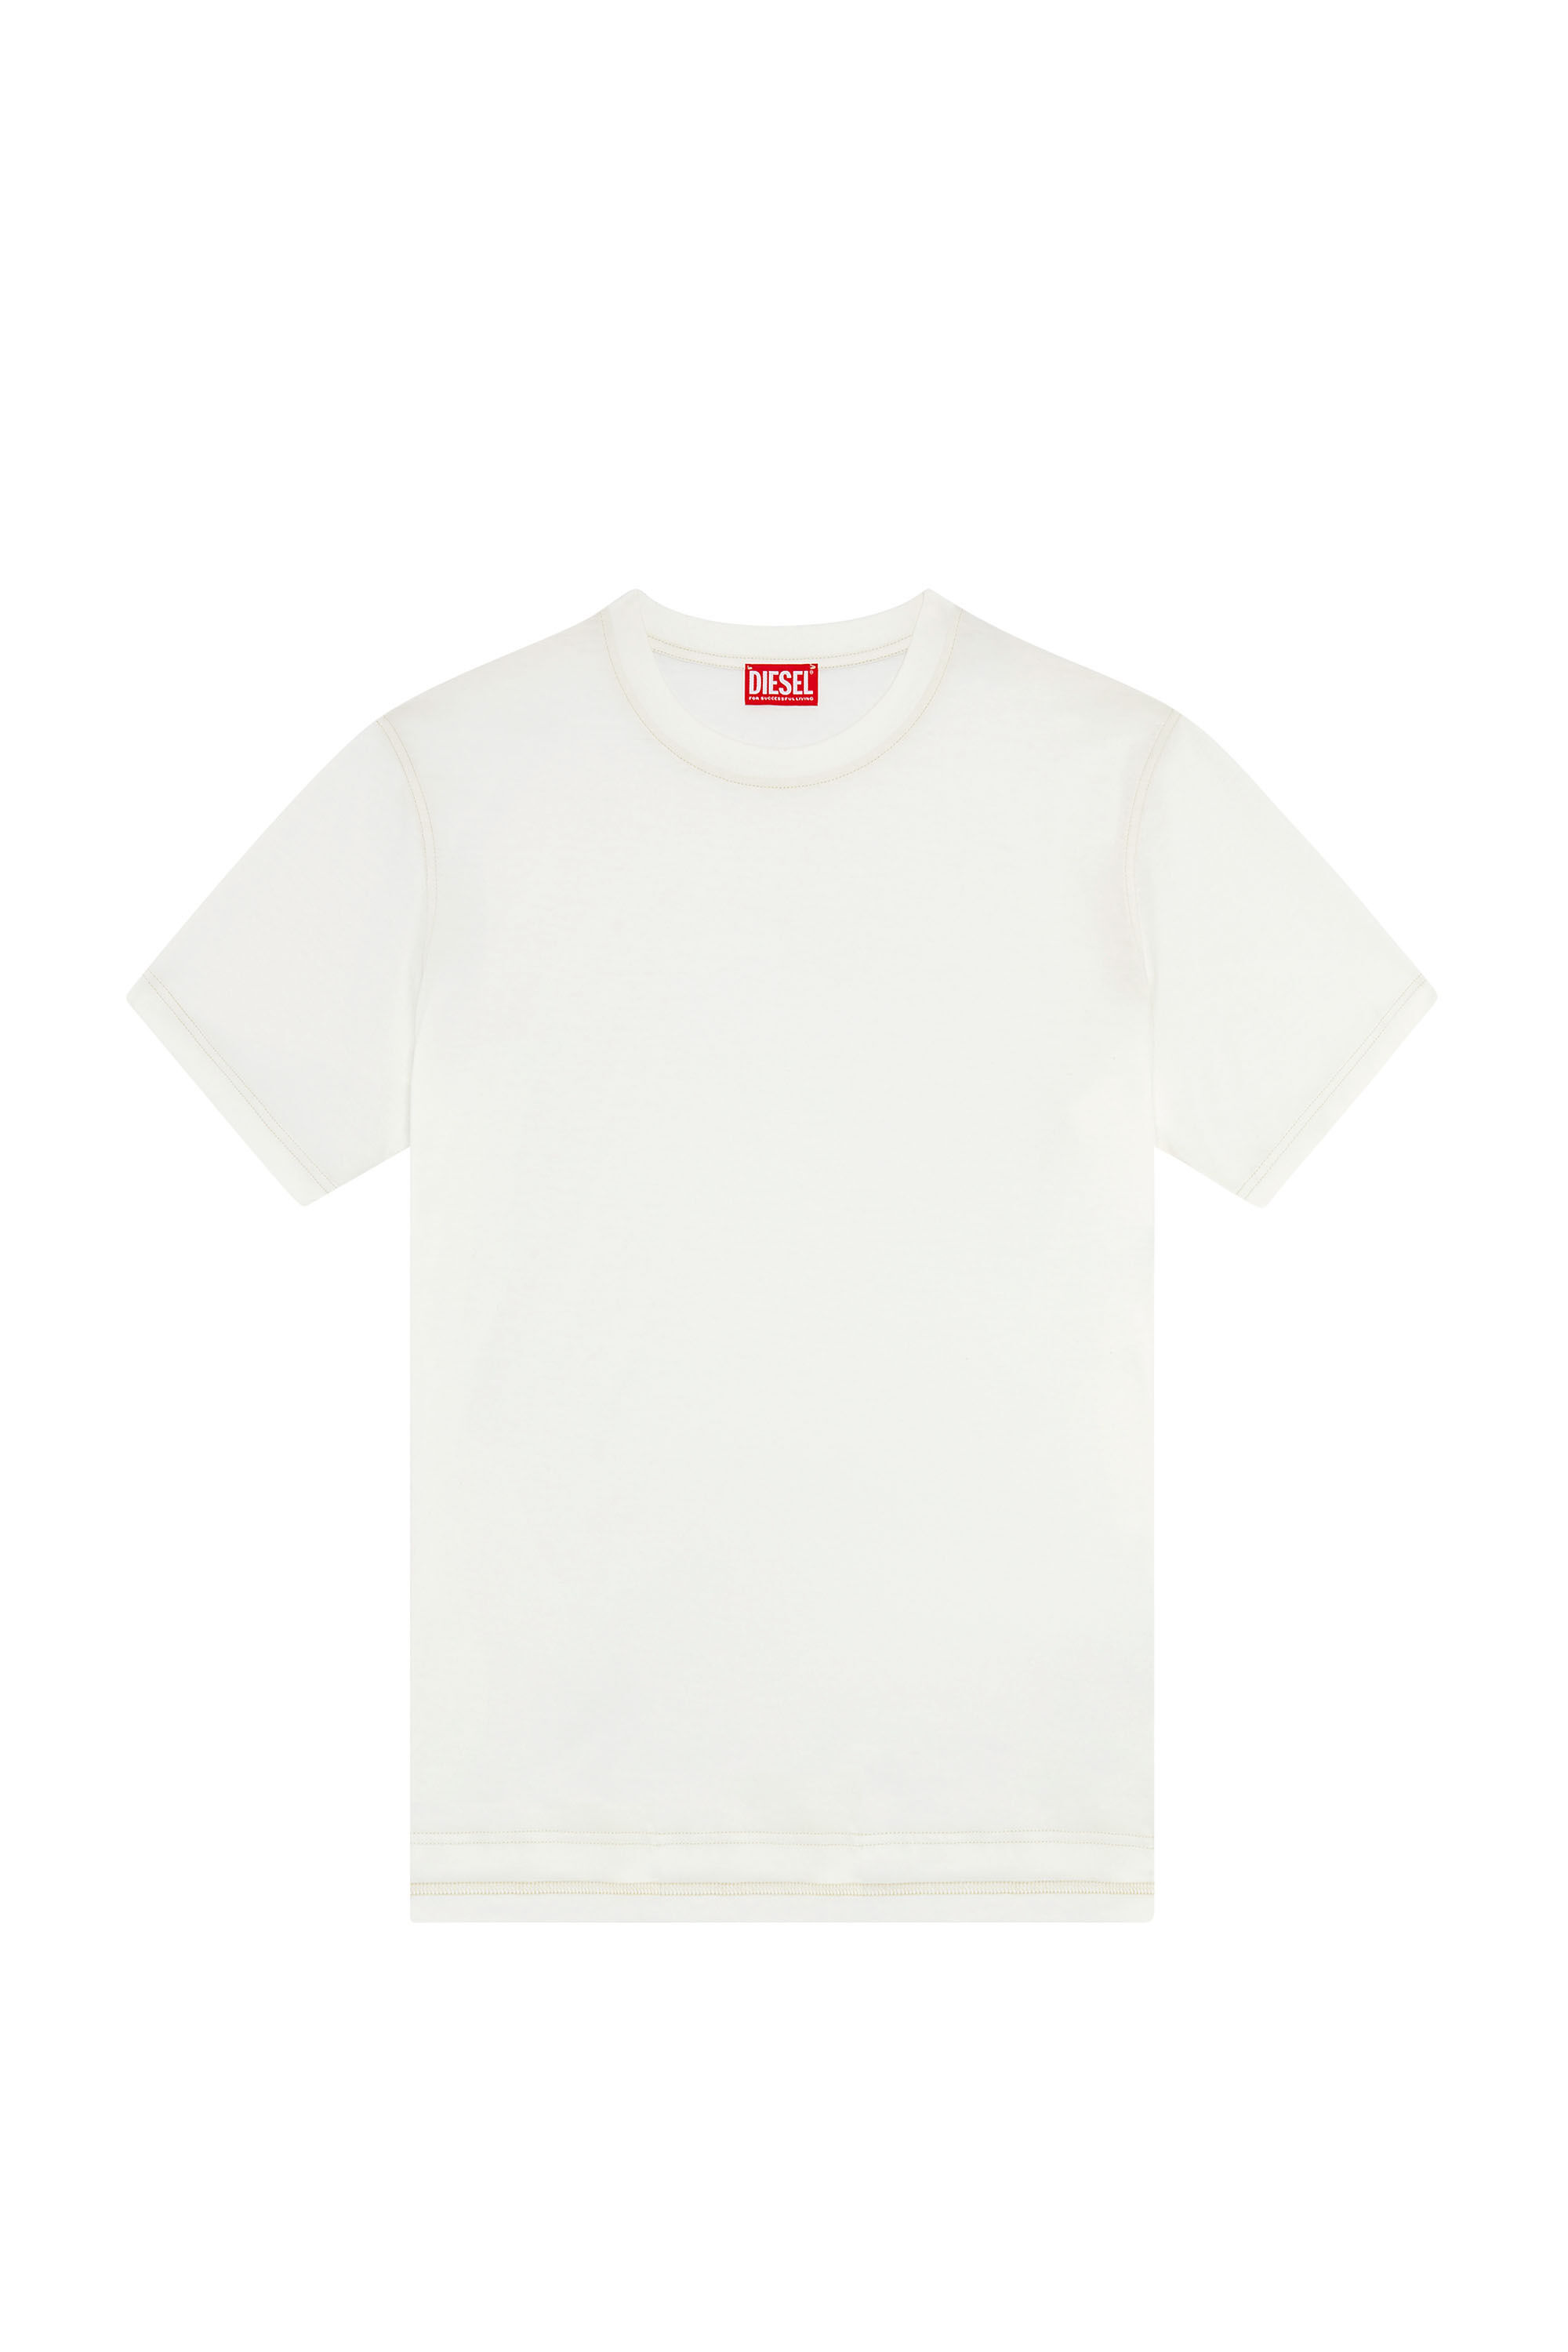 Diesel - T-MUST-SLITS-N2, Man T-shirt with Diesel Studio print in White - Image 2